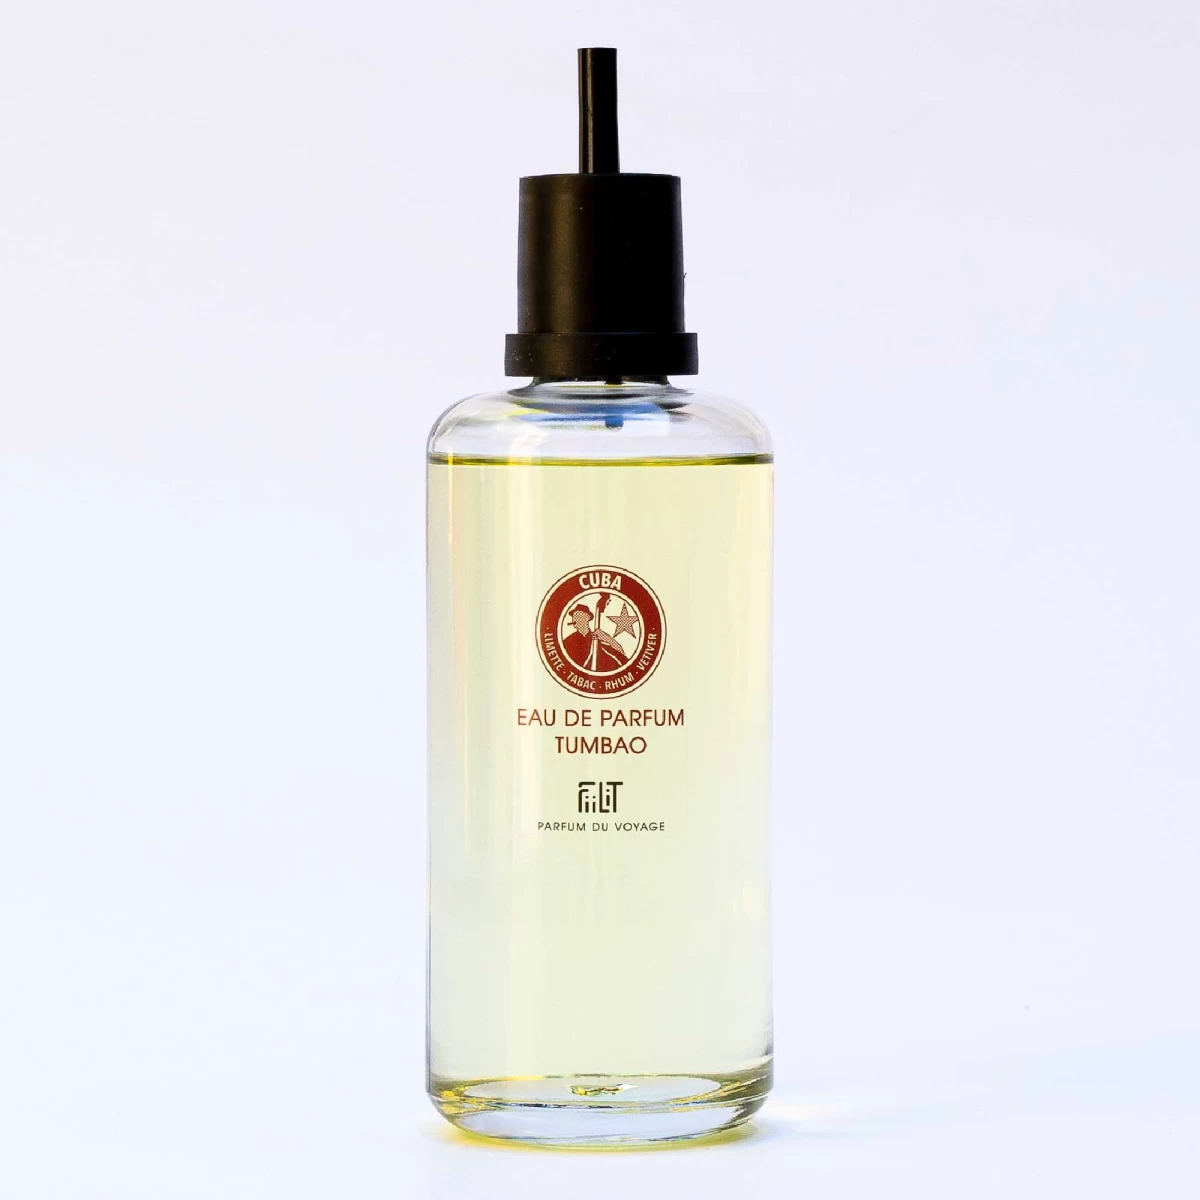 detailed_14_eau-de-parfum-tumbao-cuba-200ml-refill-fiilit-parfum-du-voyage-1.webp